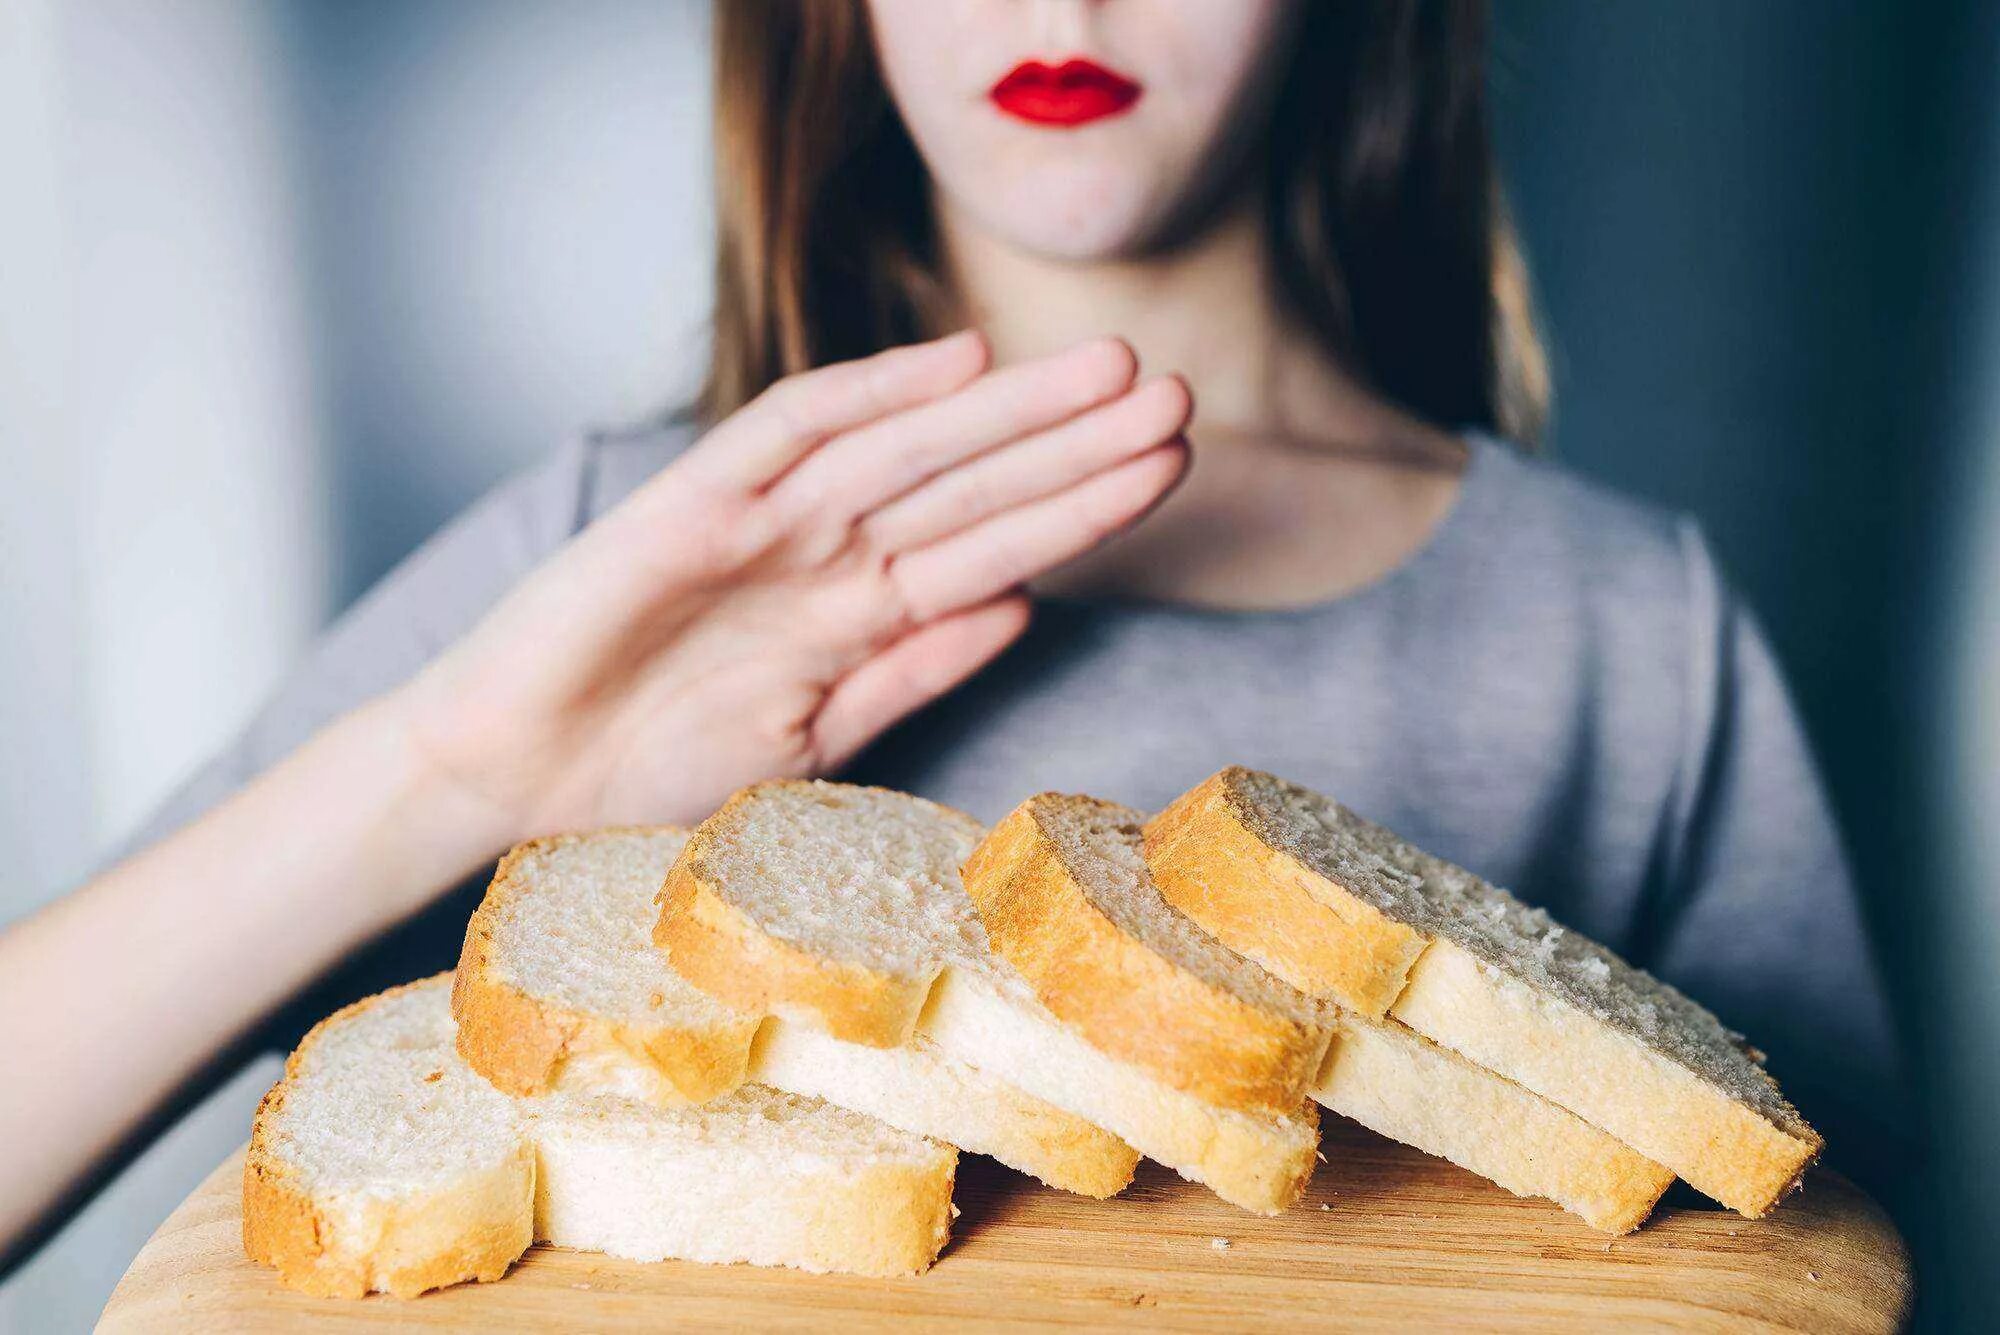 Нарезанный хлеб. Кушает хлеб. Человек ест хлеб. Девушка с диетическими хлебцами. После сладкого соленое